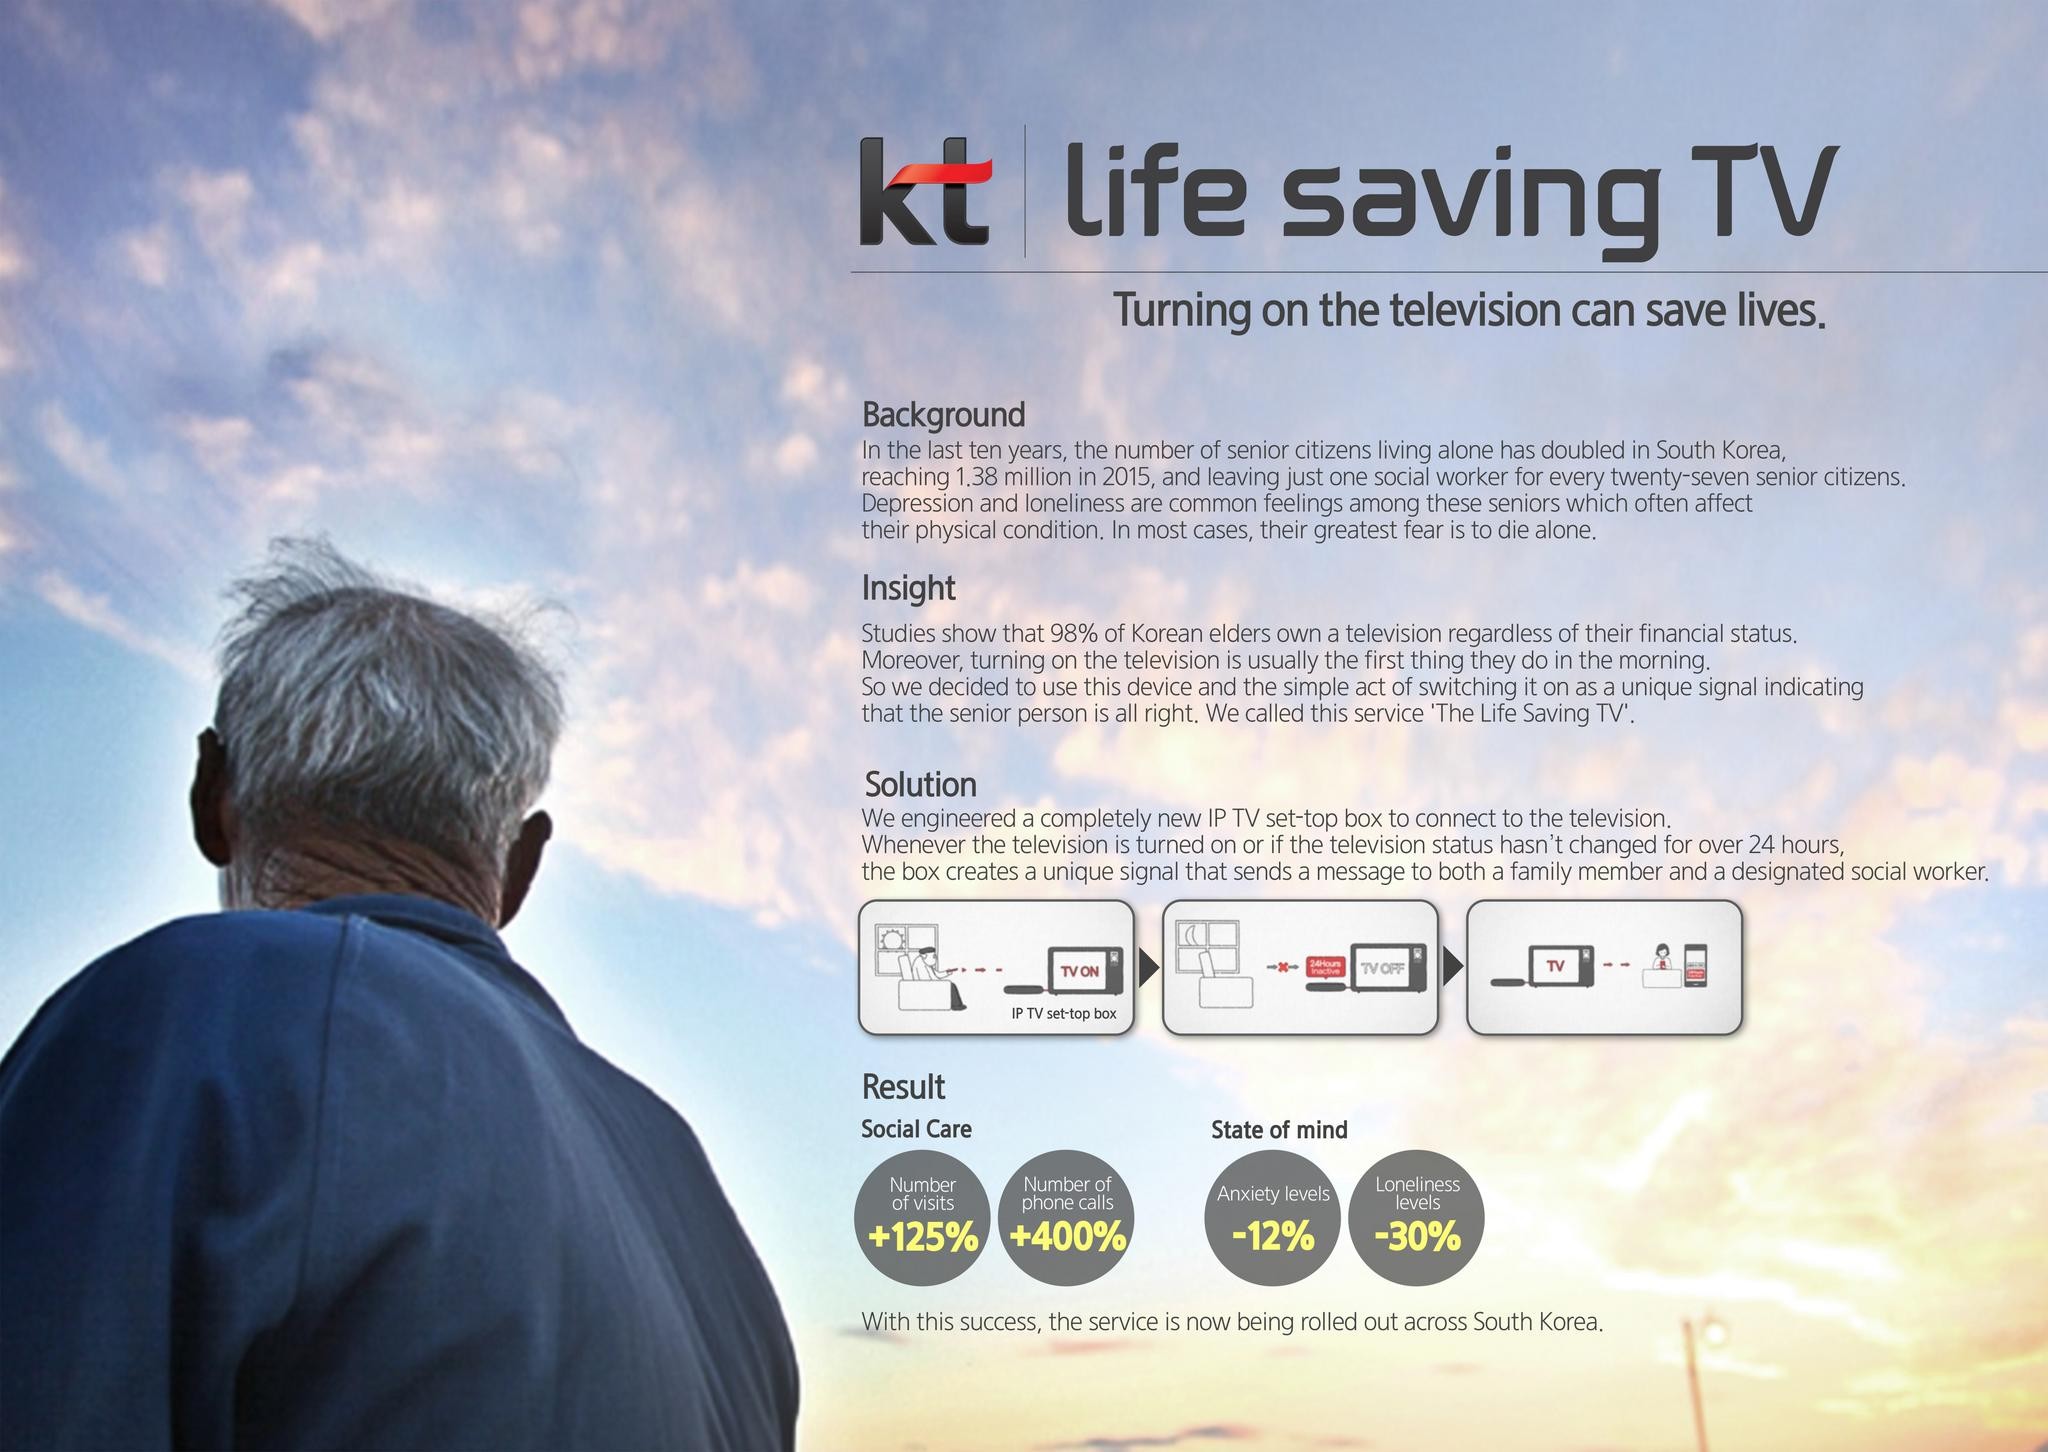 KT Life Saving TV